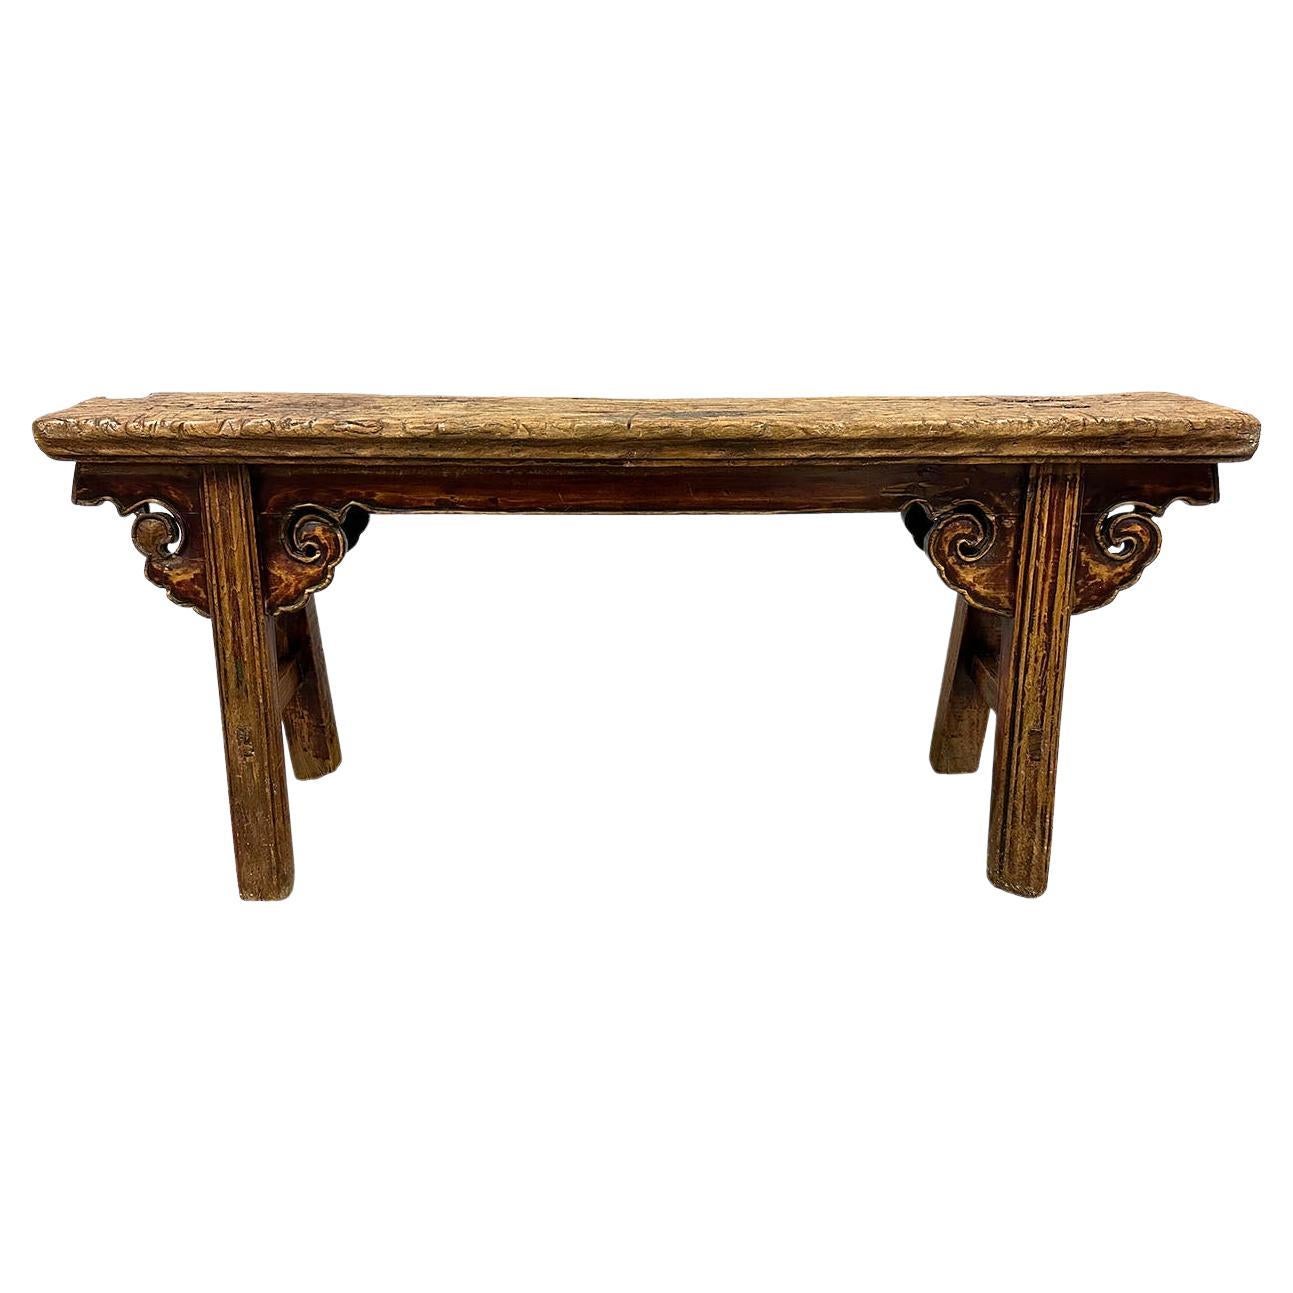 Fin du 19ème siècle, table de campagne chinoise antique, banc/table basse